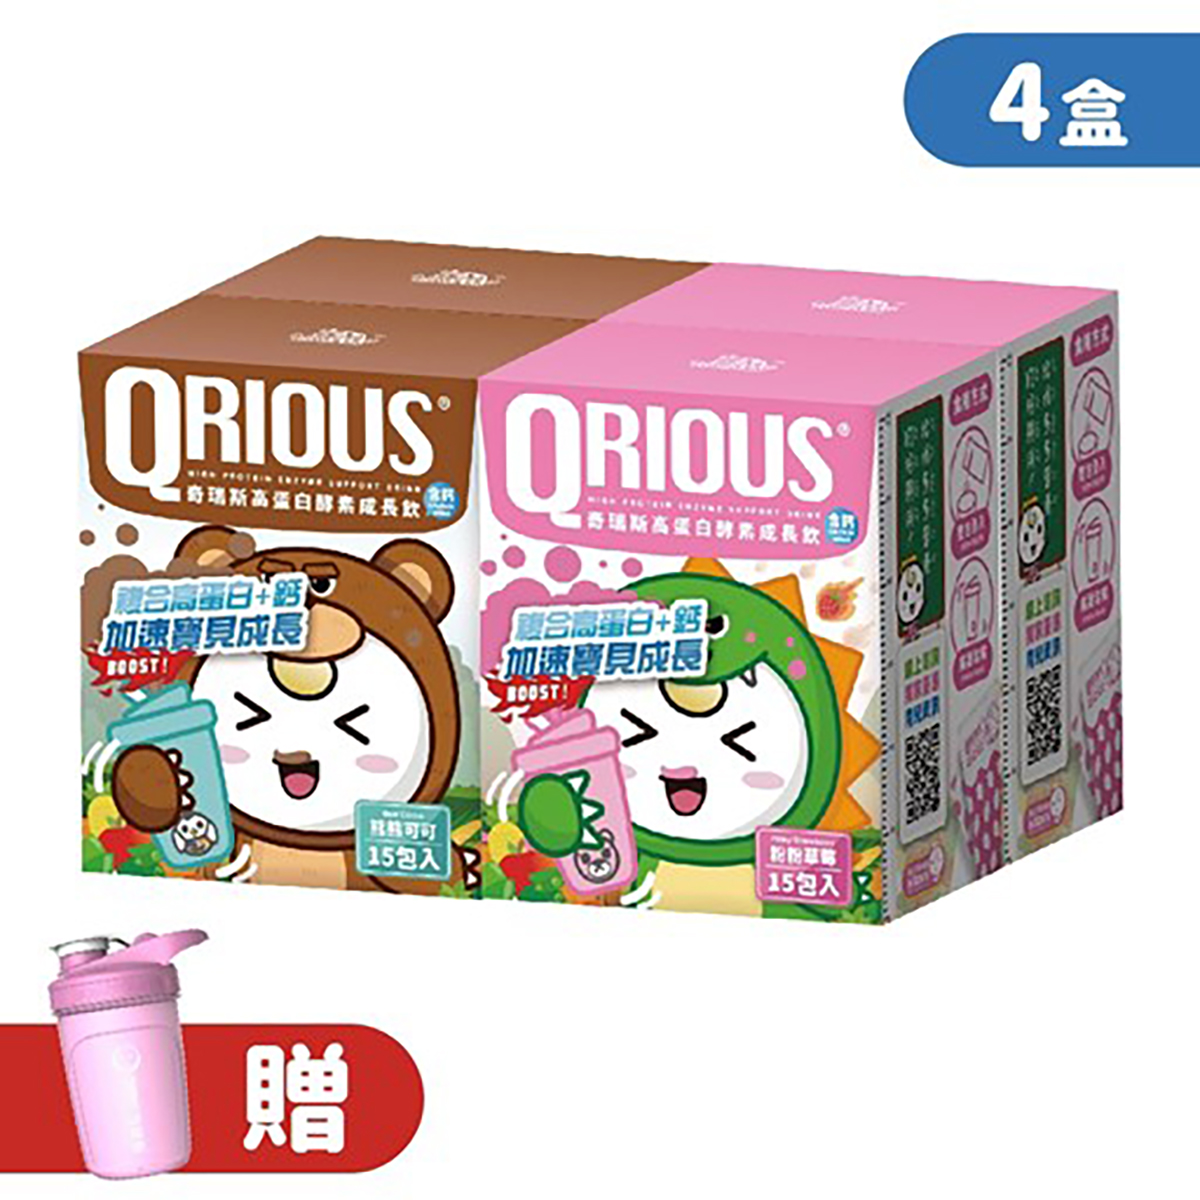 【生長發育必備】QRIOUS®奇瑞斯複方蛋白+鈣成長飲-草莓+可可(4盒)贈小Ｑ雪克杯(1入)